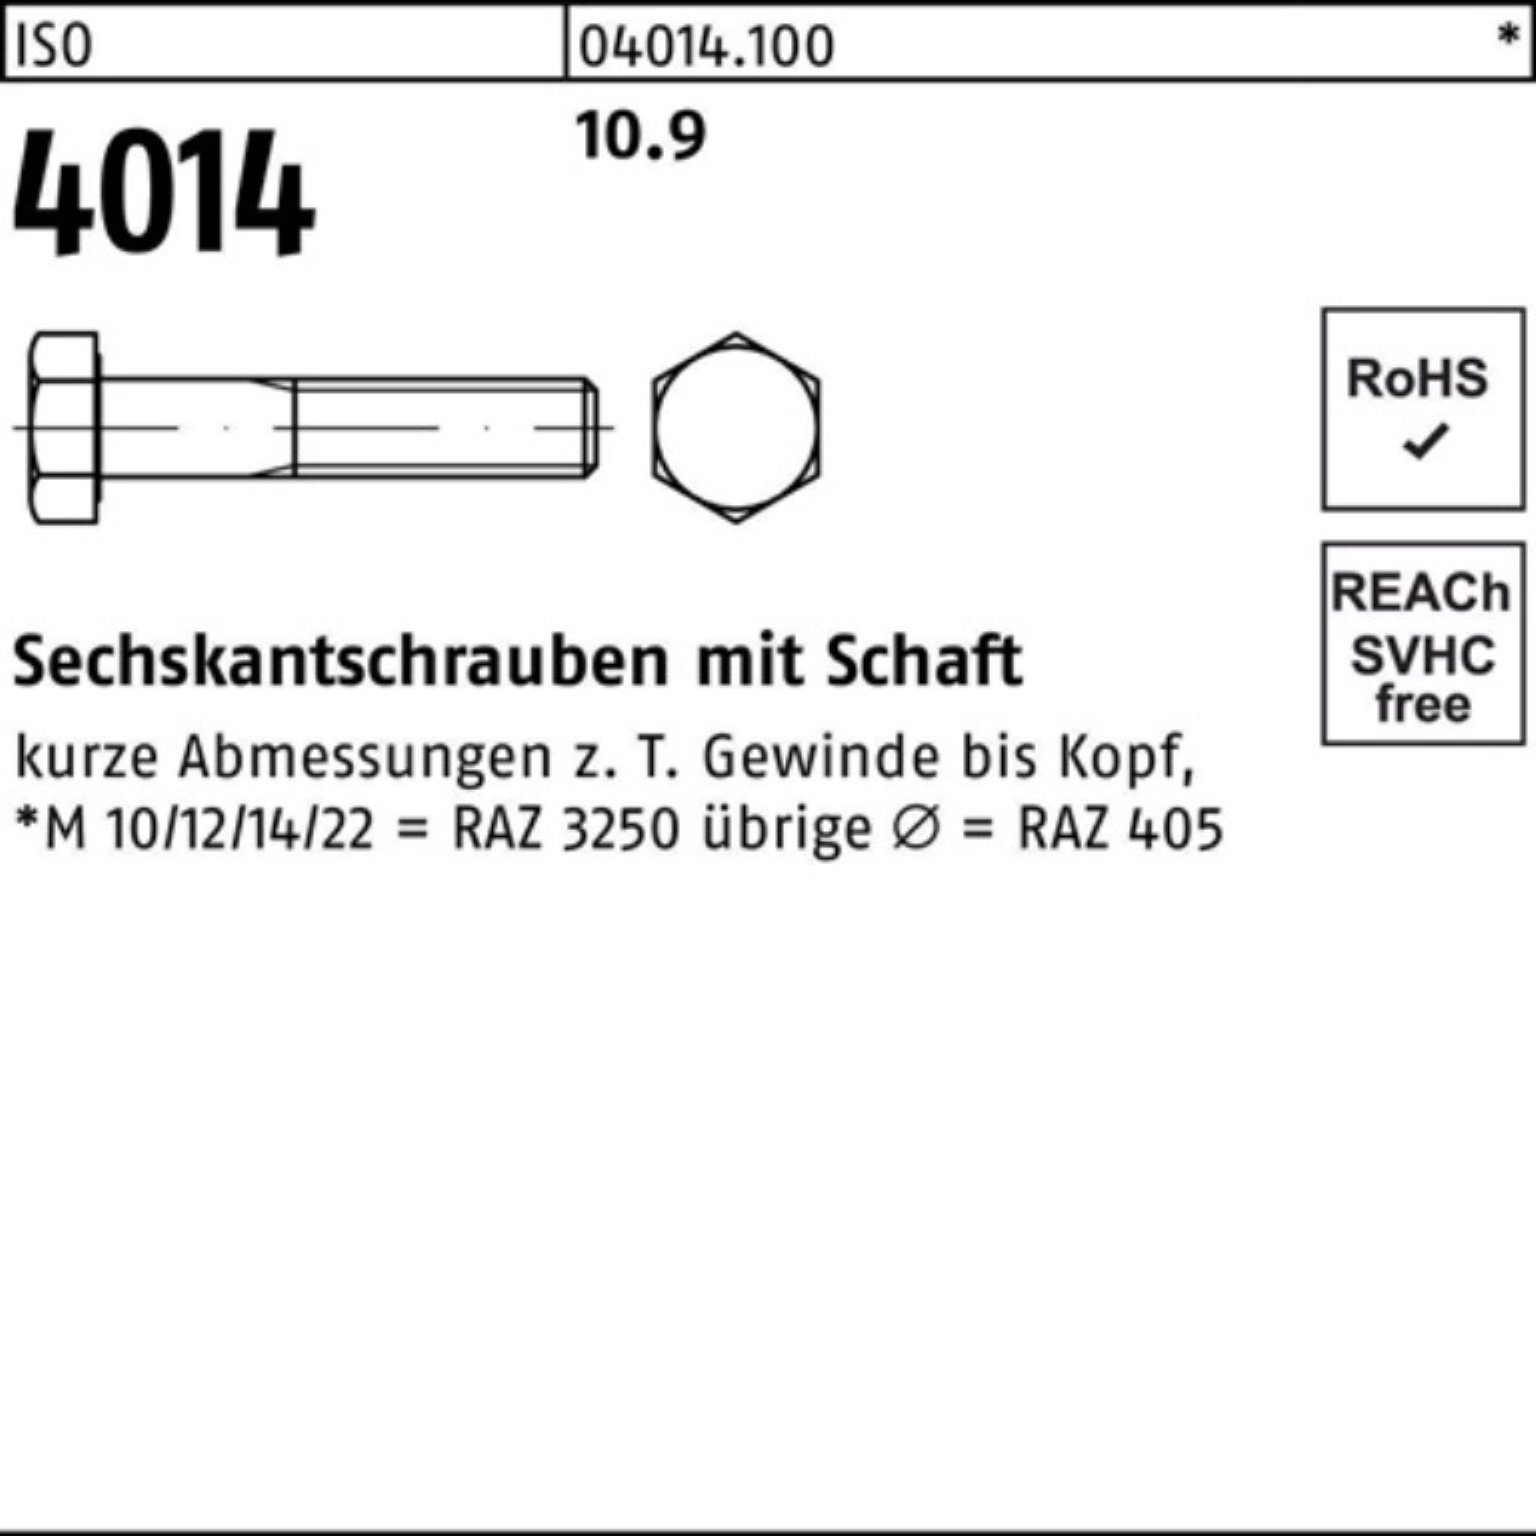 Bufab Sechskantschraube 100er Pack Sechskantschraube 300 Stück Schaft M24x 10.9 IS 4014 1 ISO